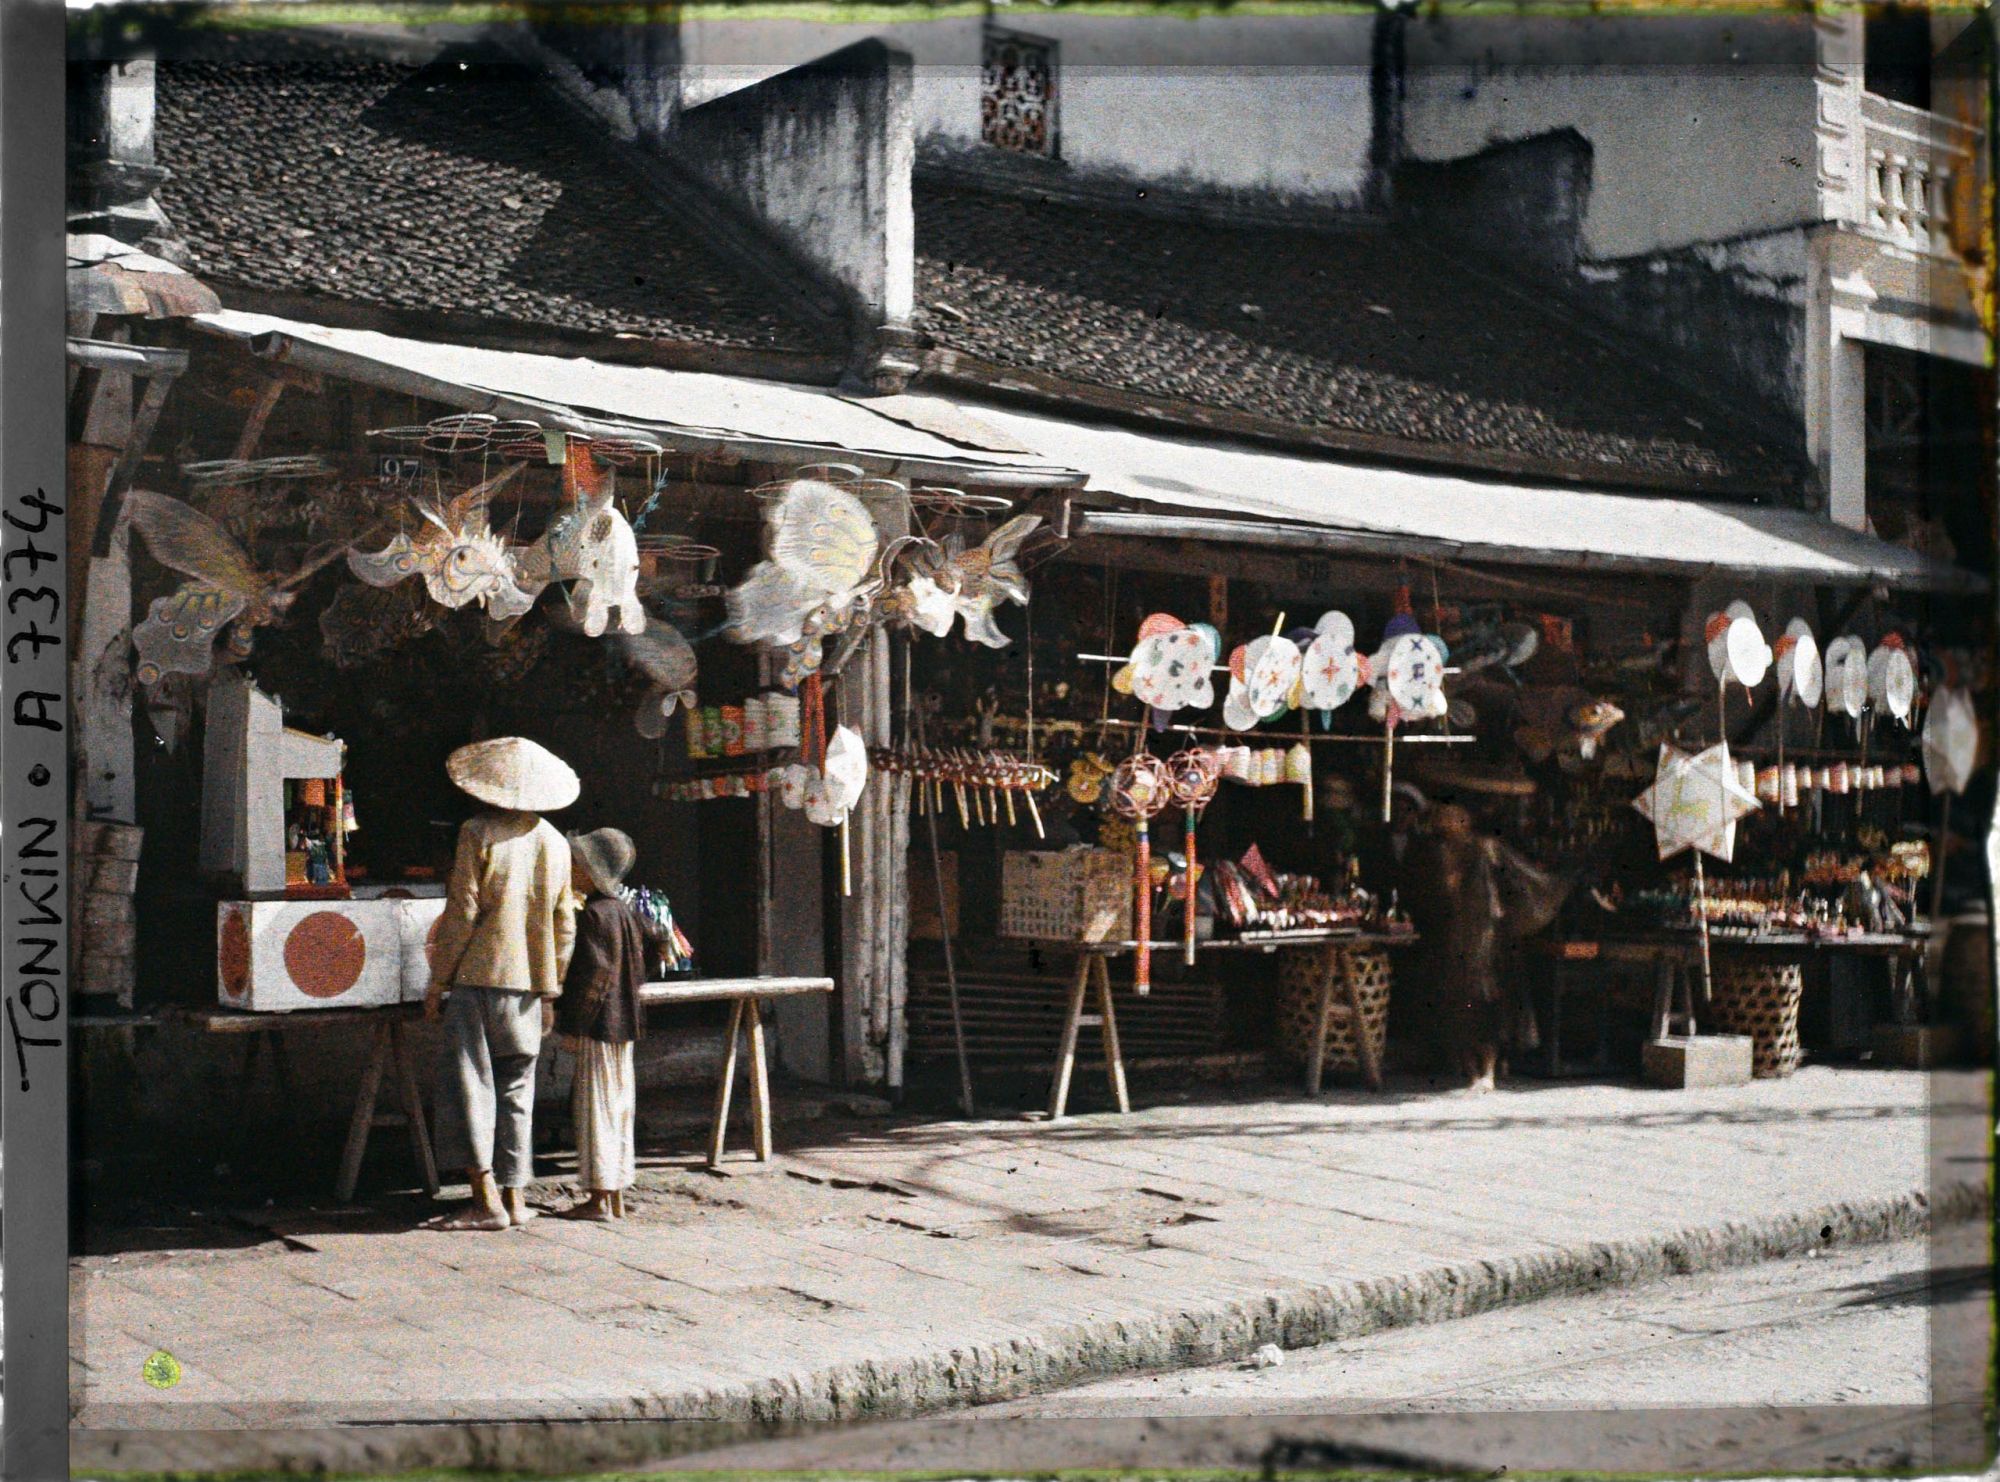 Bảo tàng chứa đến 1.382 tấm ảnh về Việt Nam: Trung thu Hà Nội đầy sắc màu - Ảnh 9.